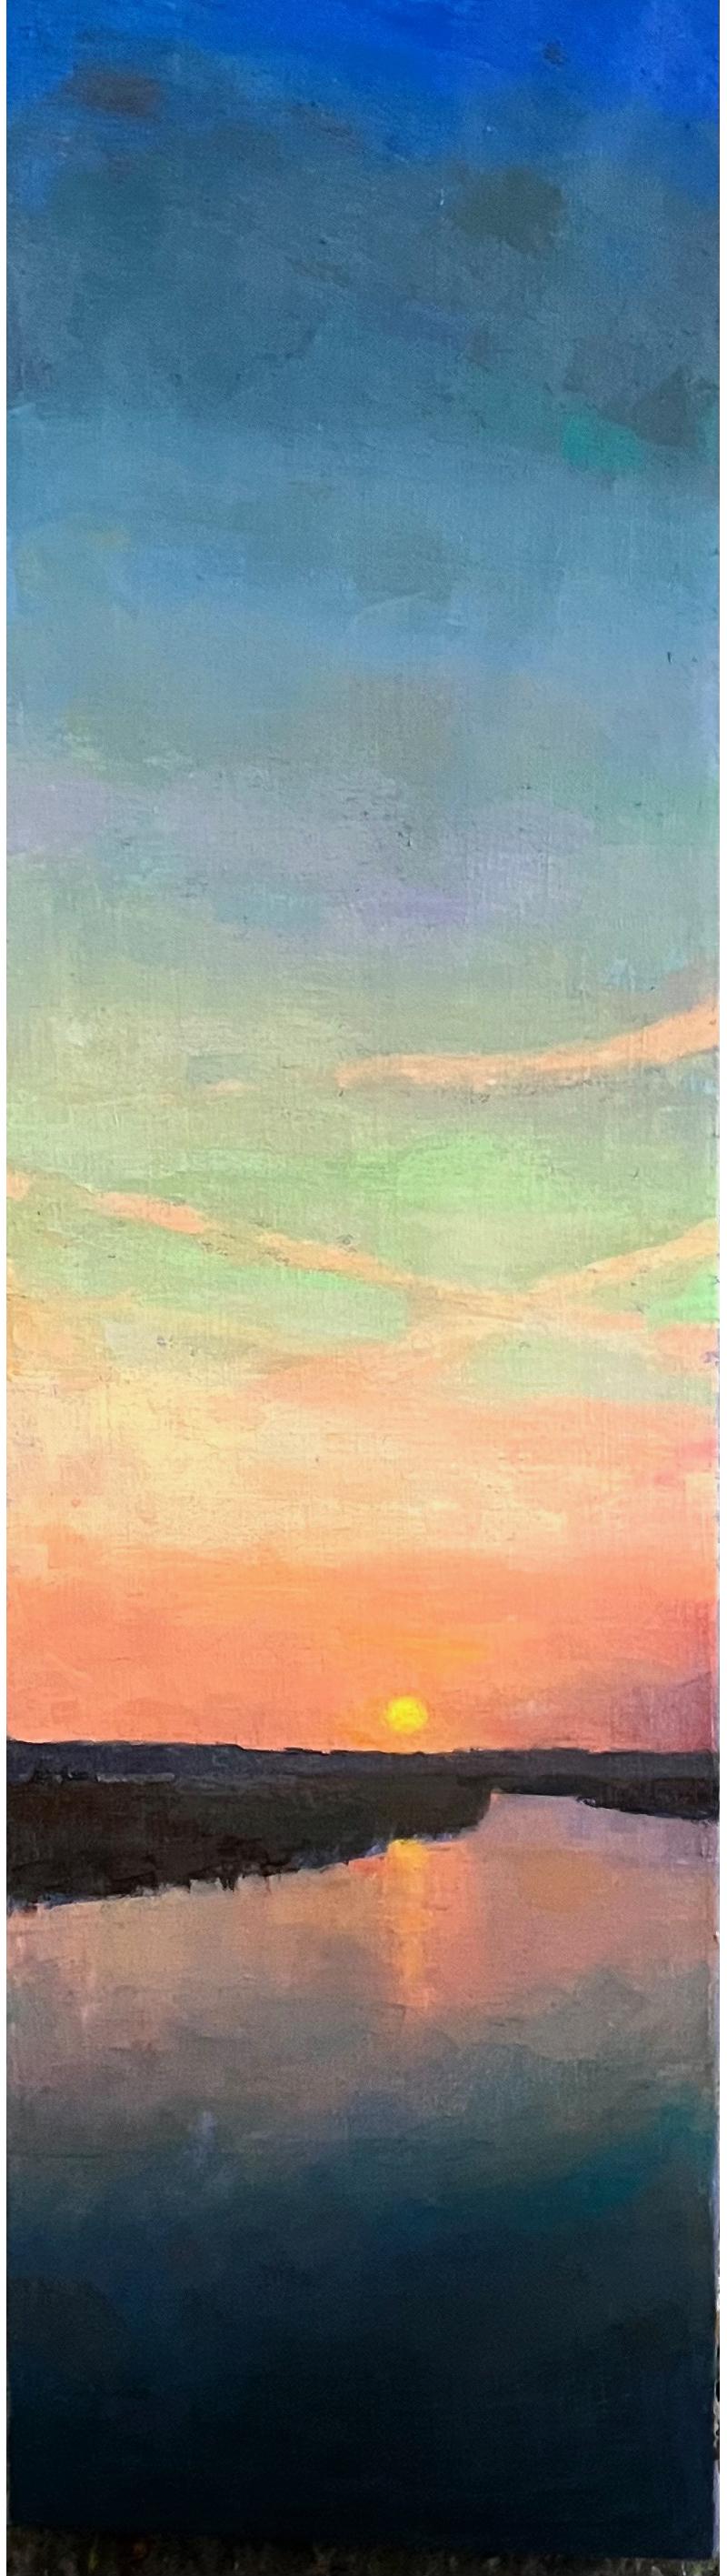 „At the End of the Day“ vertikale Meereslandschaft, Sonnenuntergang, rosa-blauer Dämmerung